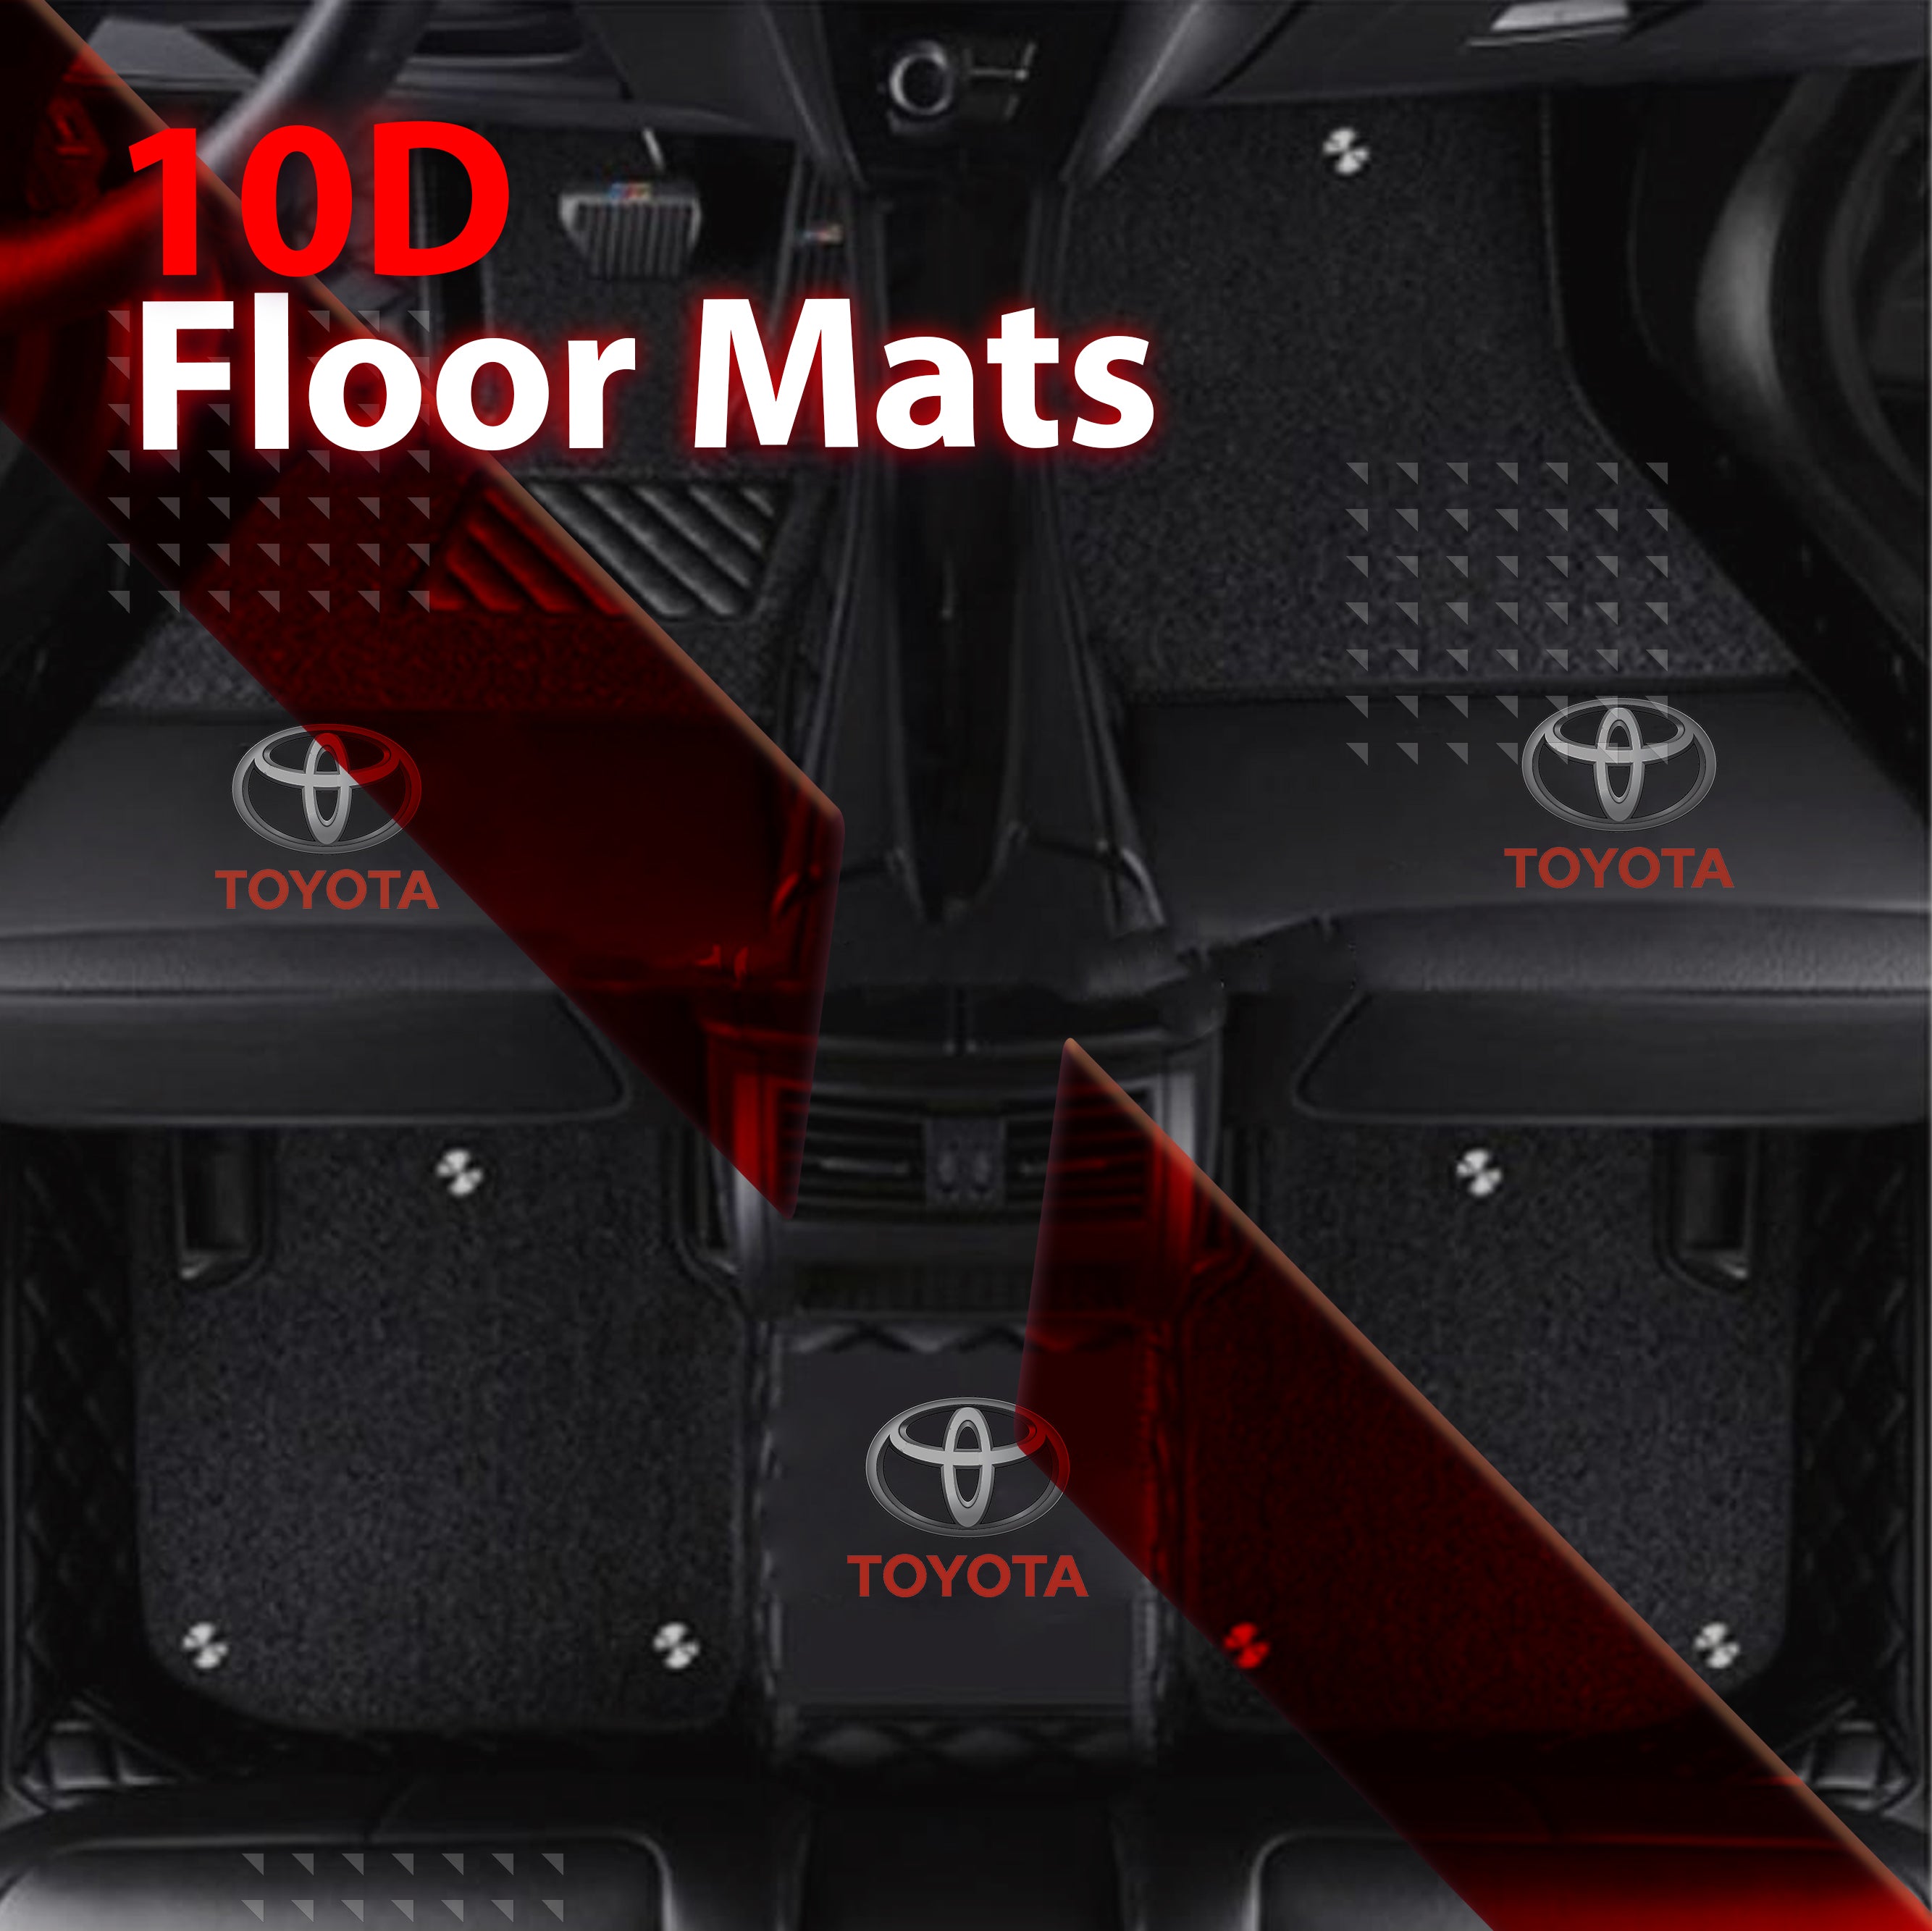 10D Floor Mats